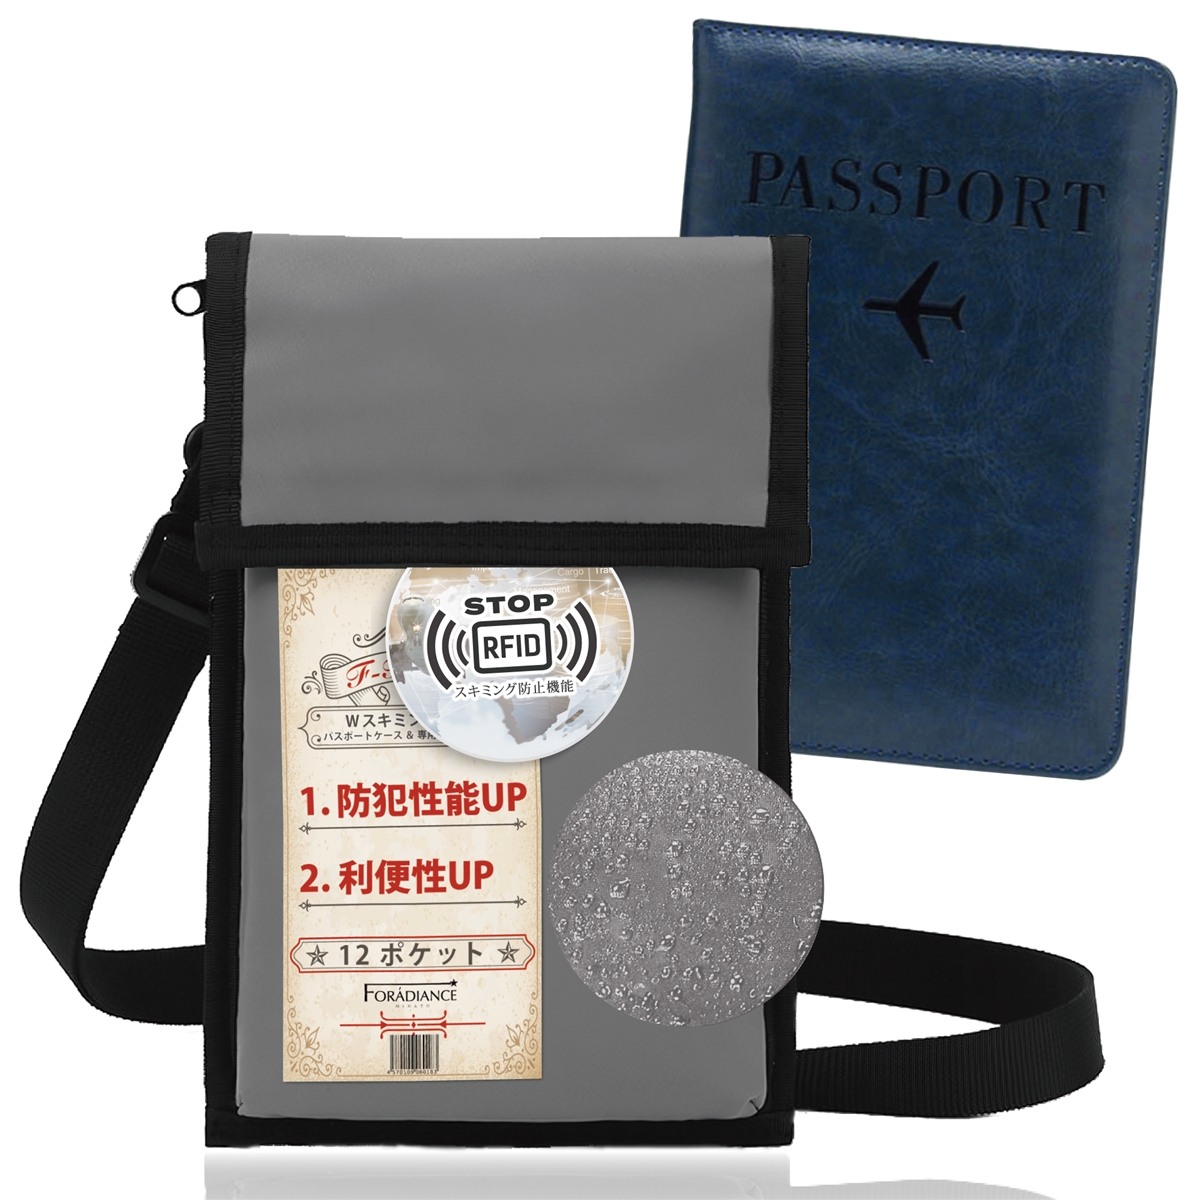 パスポートケース付き 首下げ スキミング防止 セキュリティポーチ RFID スリ防止 防犯( 専用カバー ［ダークブルー］)